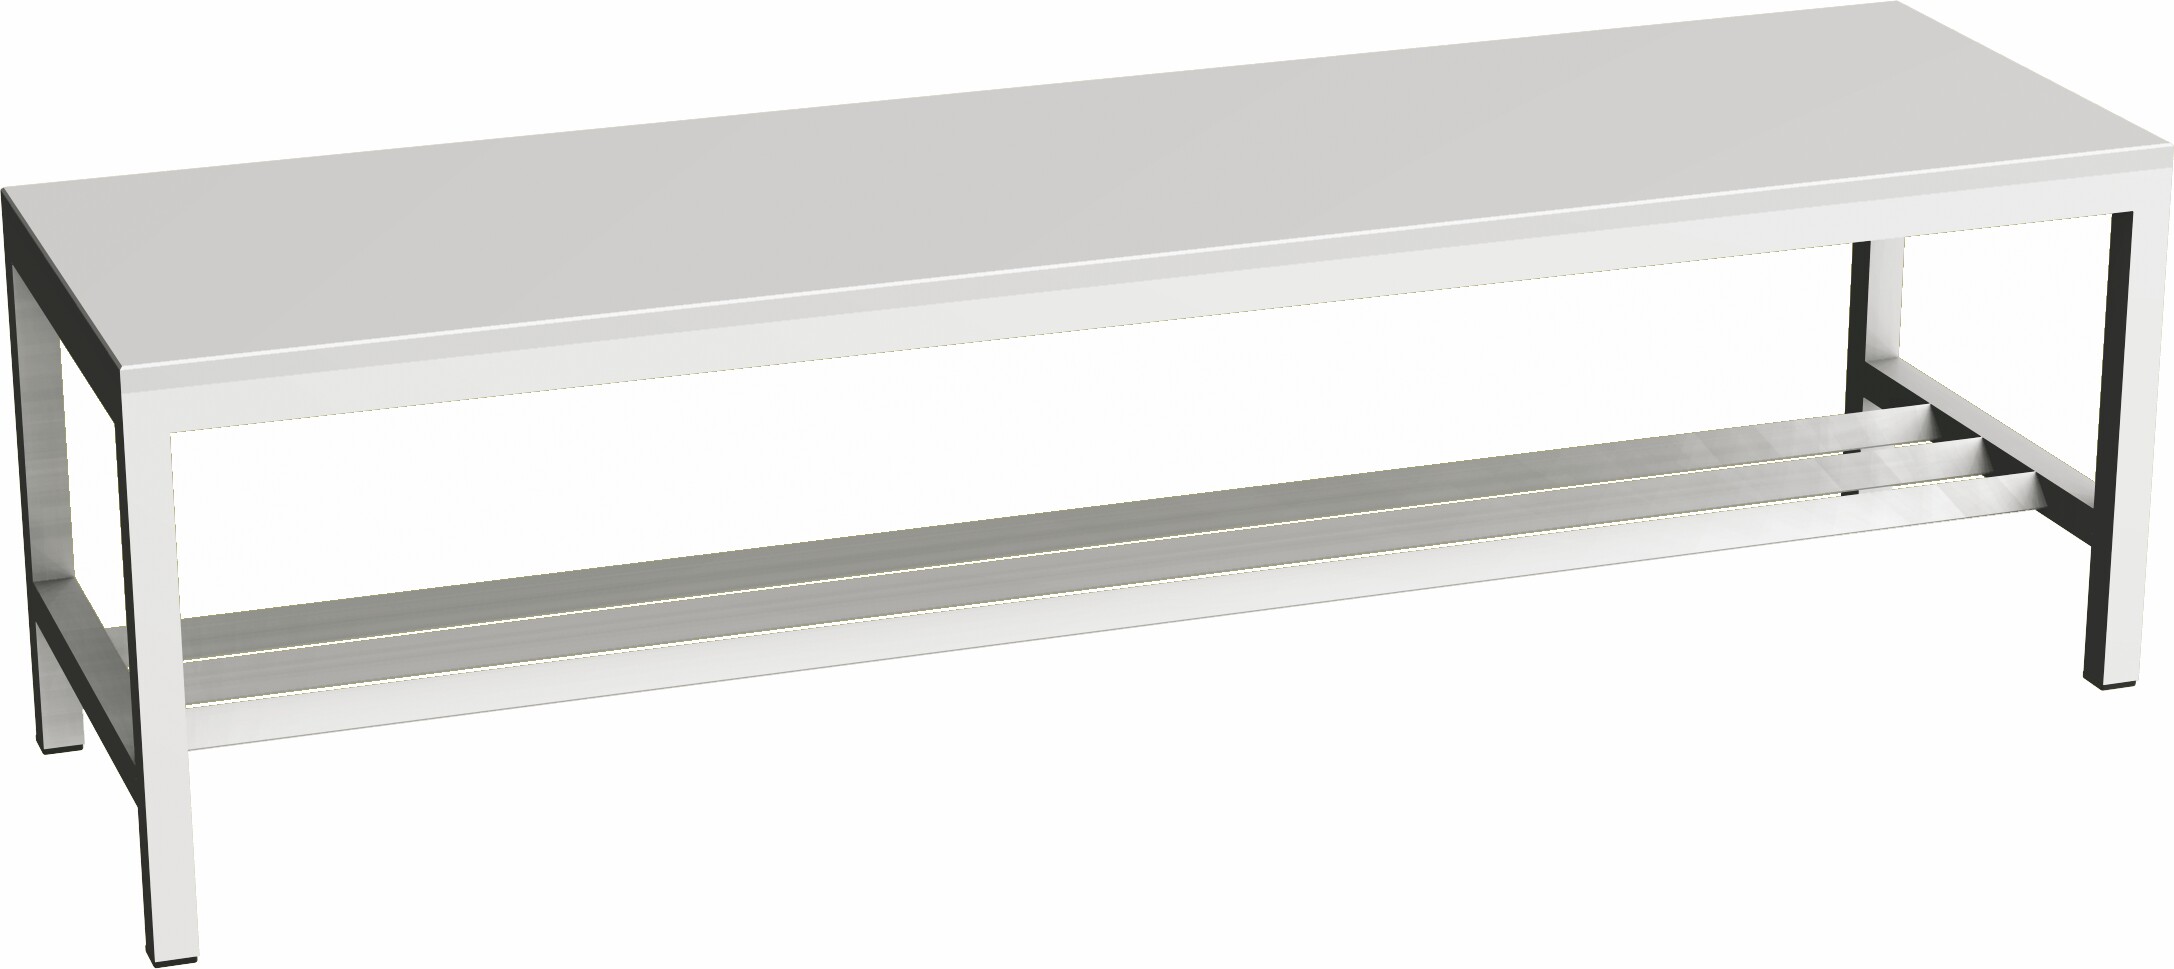 Šatnová lavice svařovaná PRLAV15A - délka 1,5 m, lamino, šedá